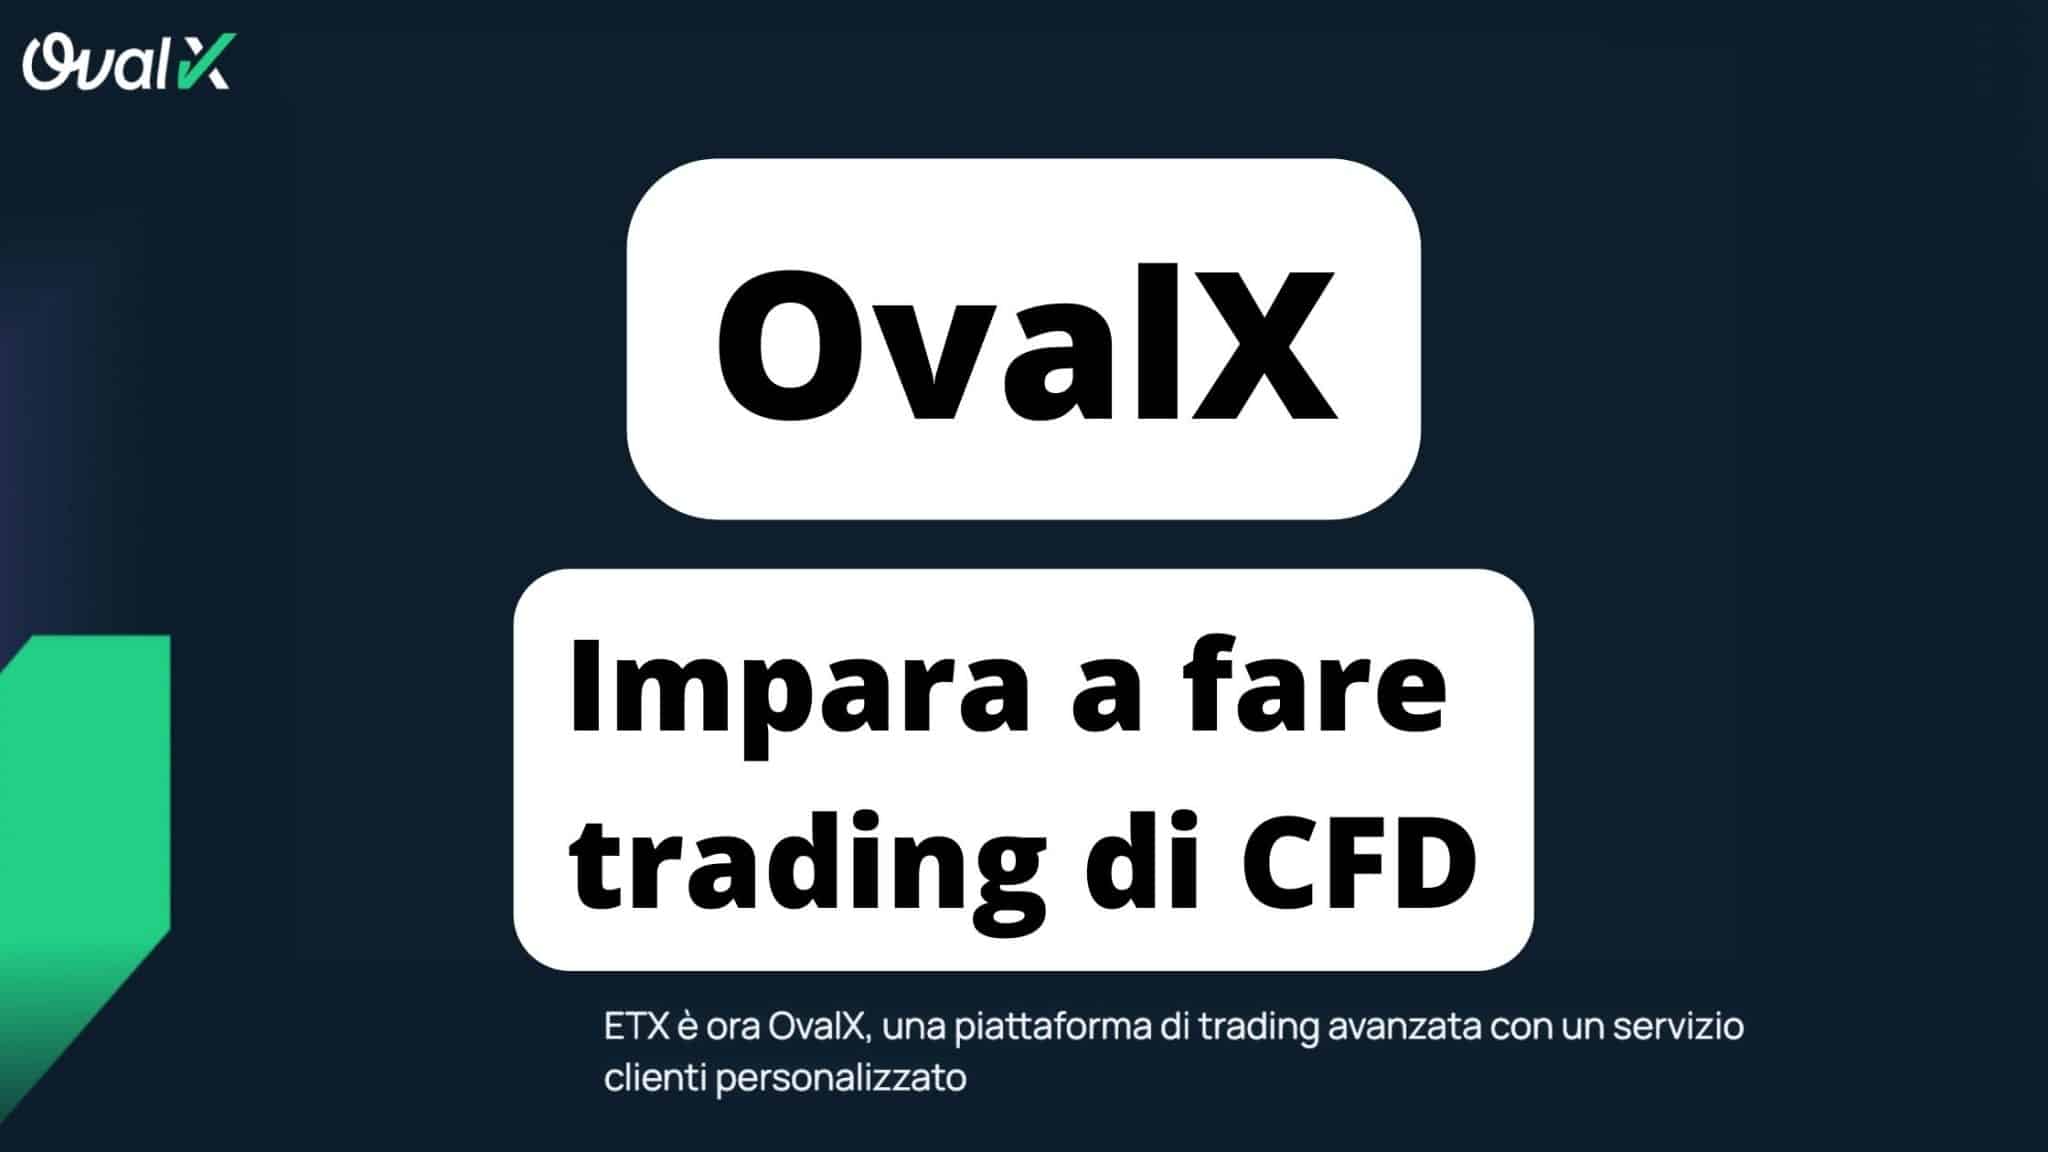 OvalX investire in CFD senza rischi